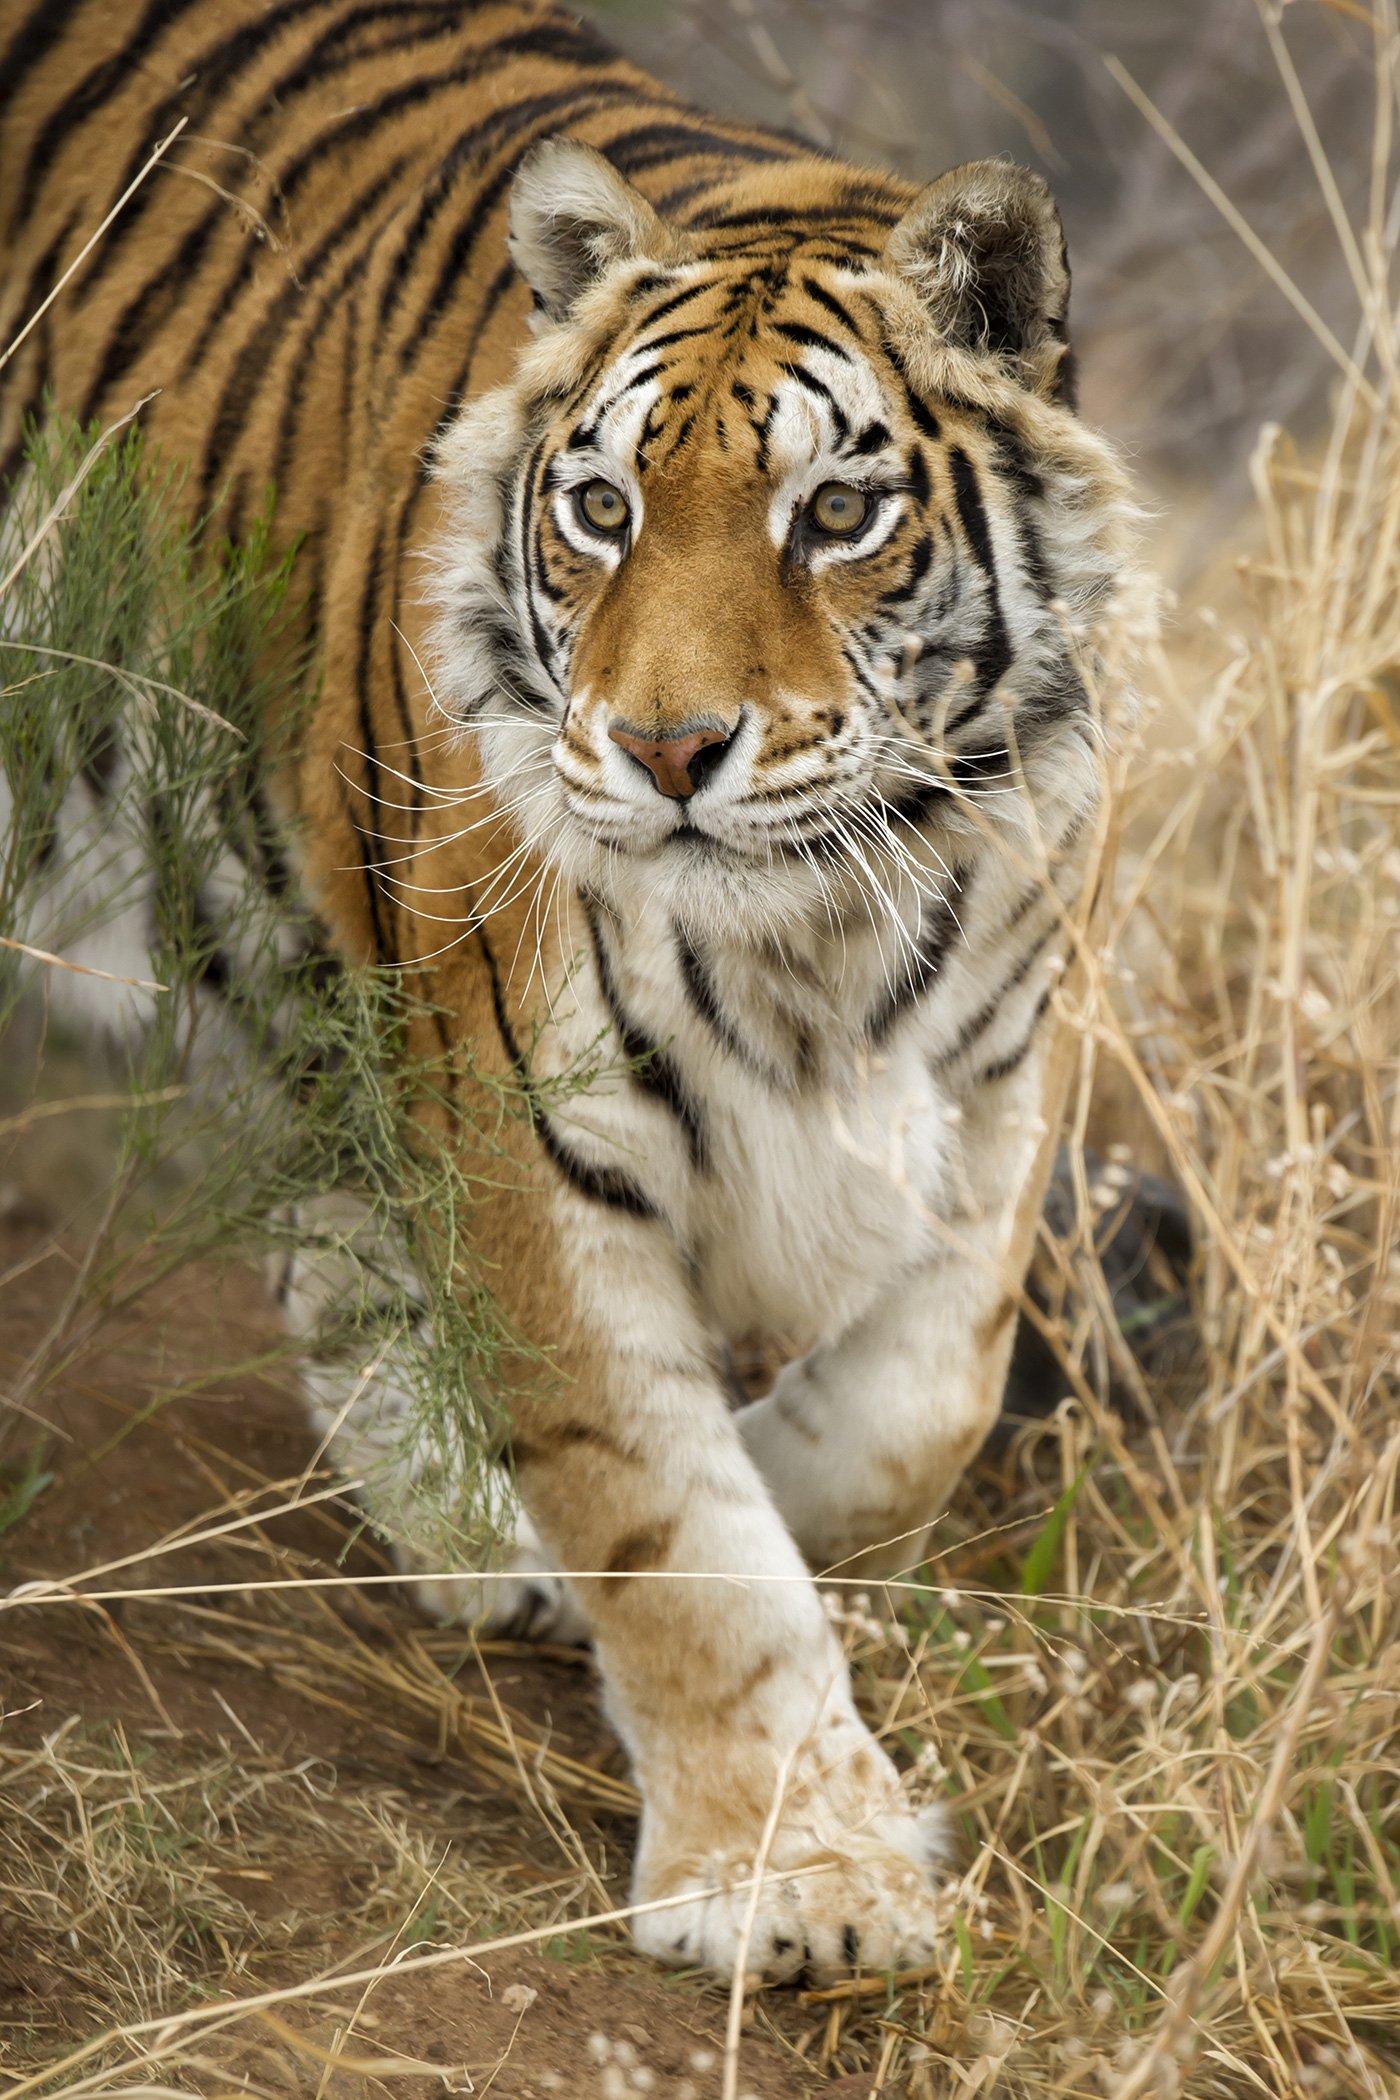 A tiger roams the savannah at the Safari Park